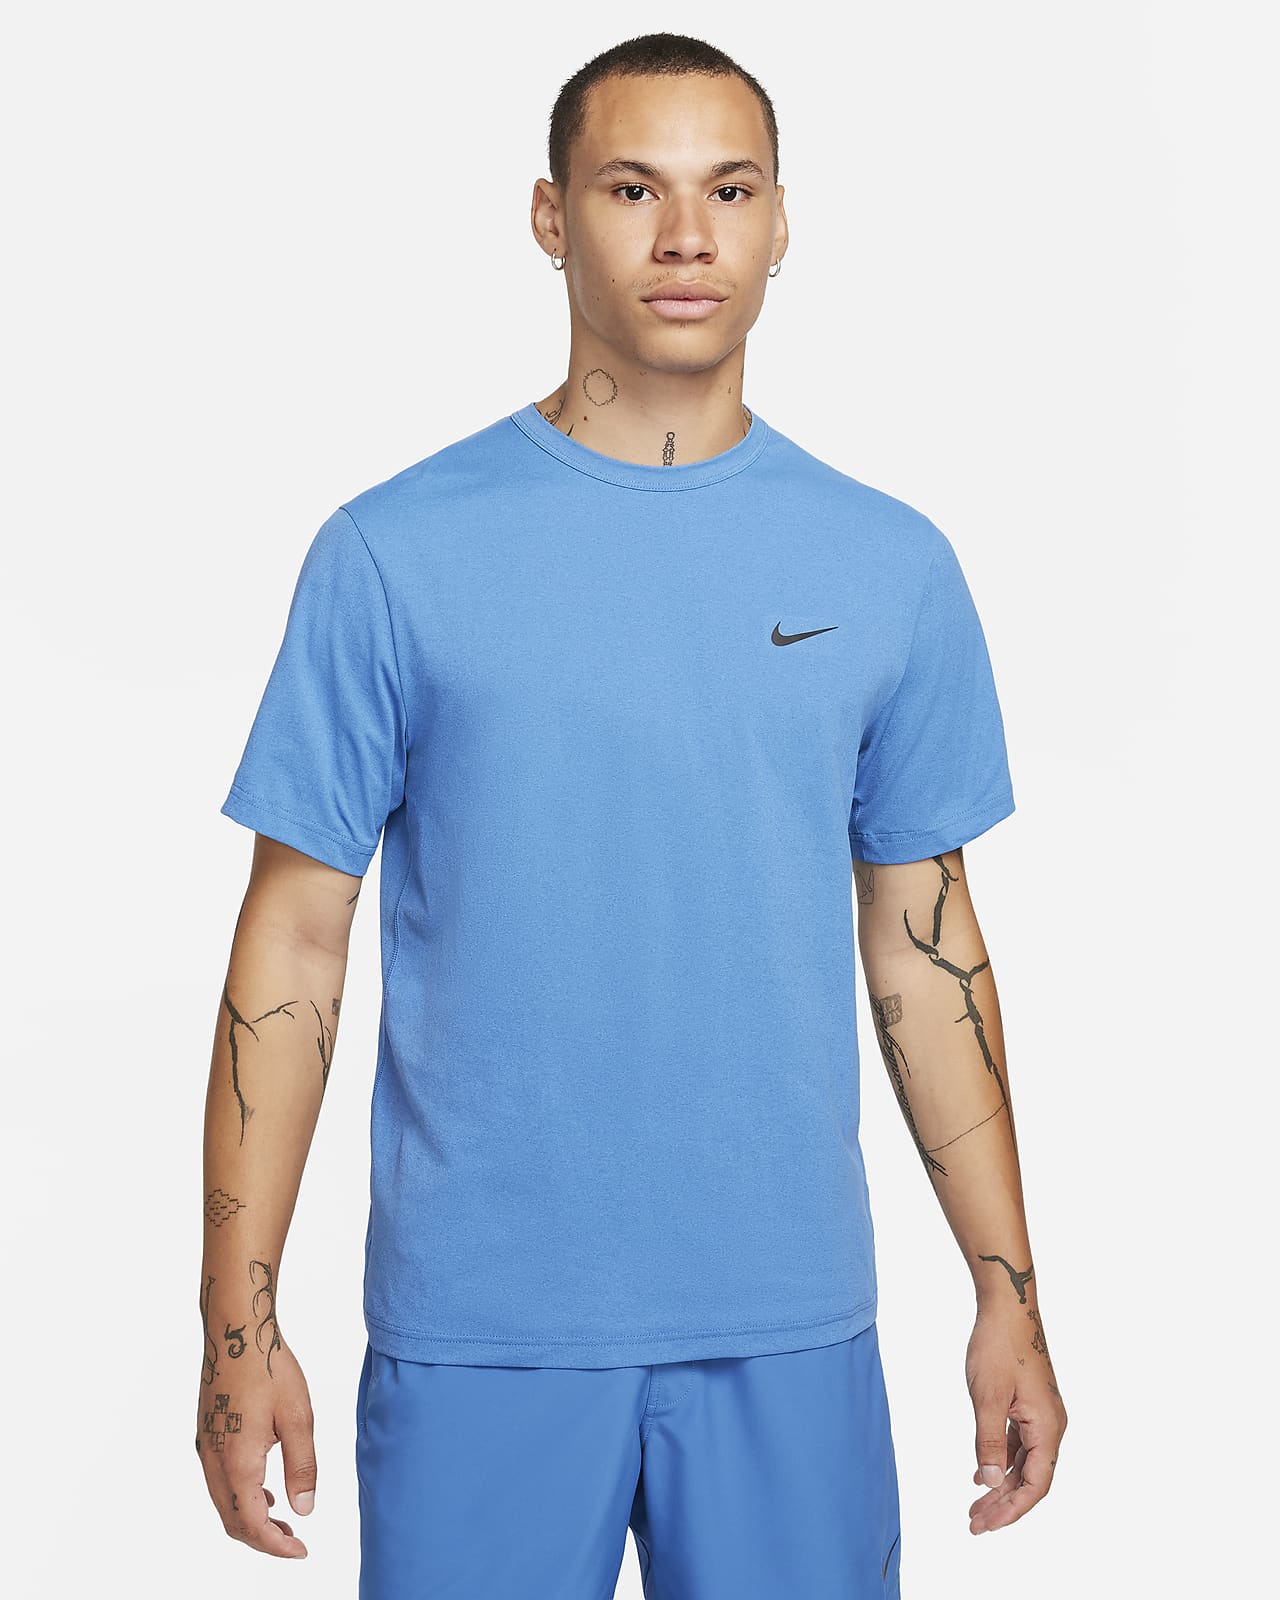 Męska uniwersalna koszulka z krótkim rękawem Dri-FIT UV Nike Hyverse 